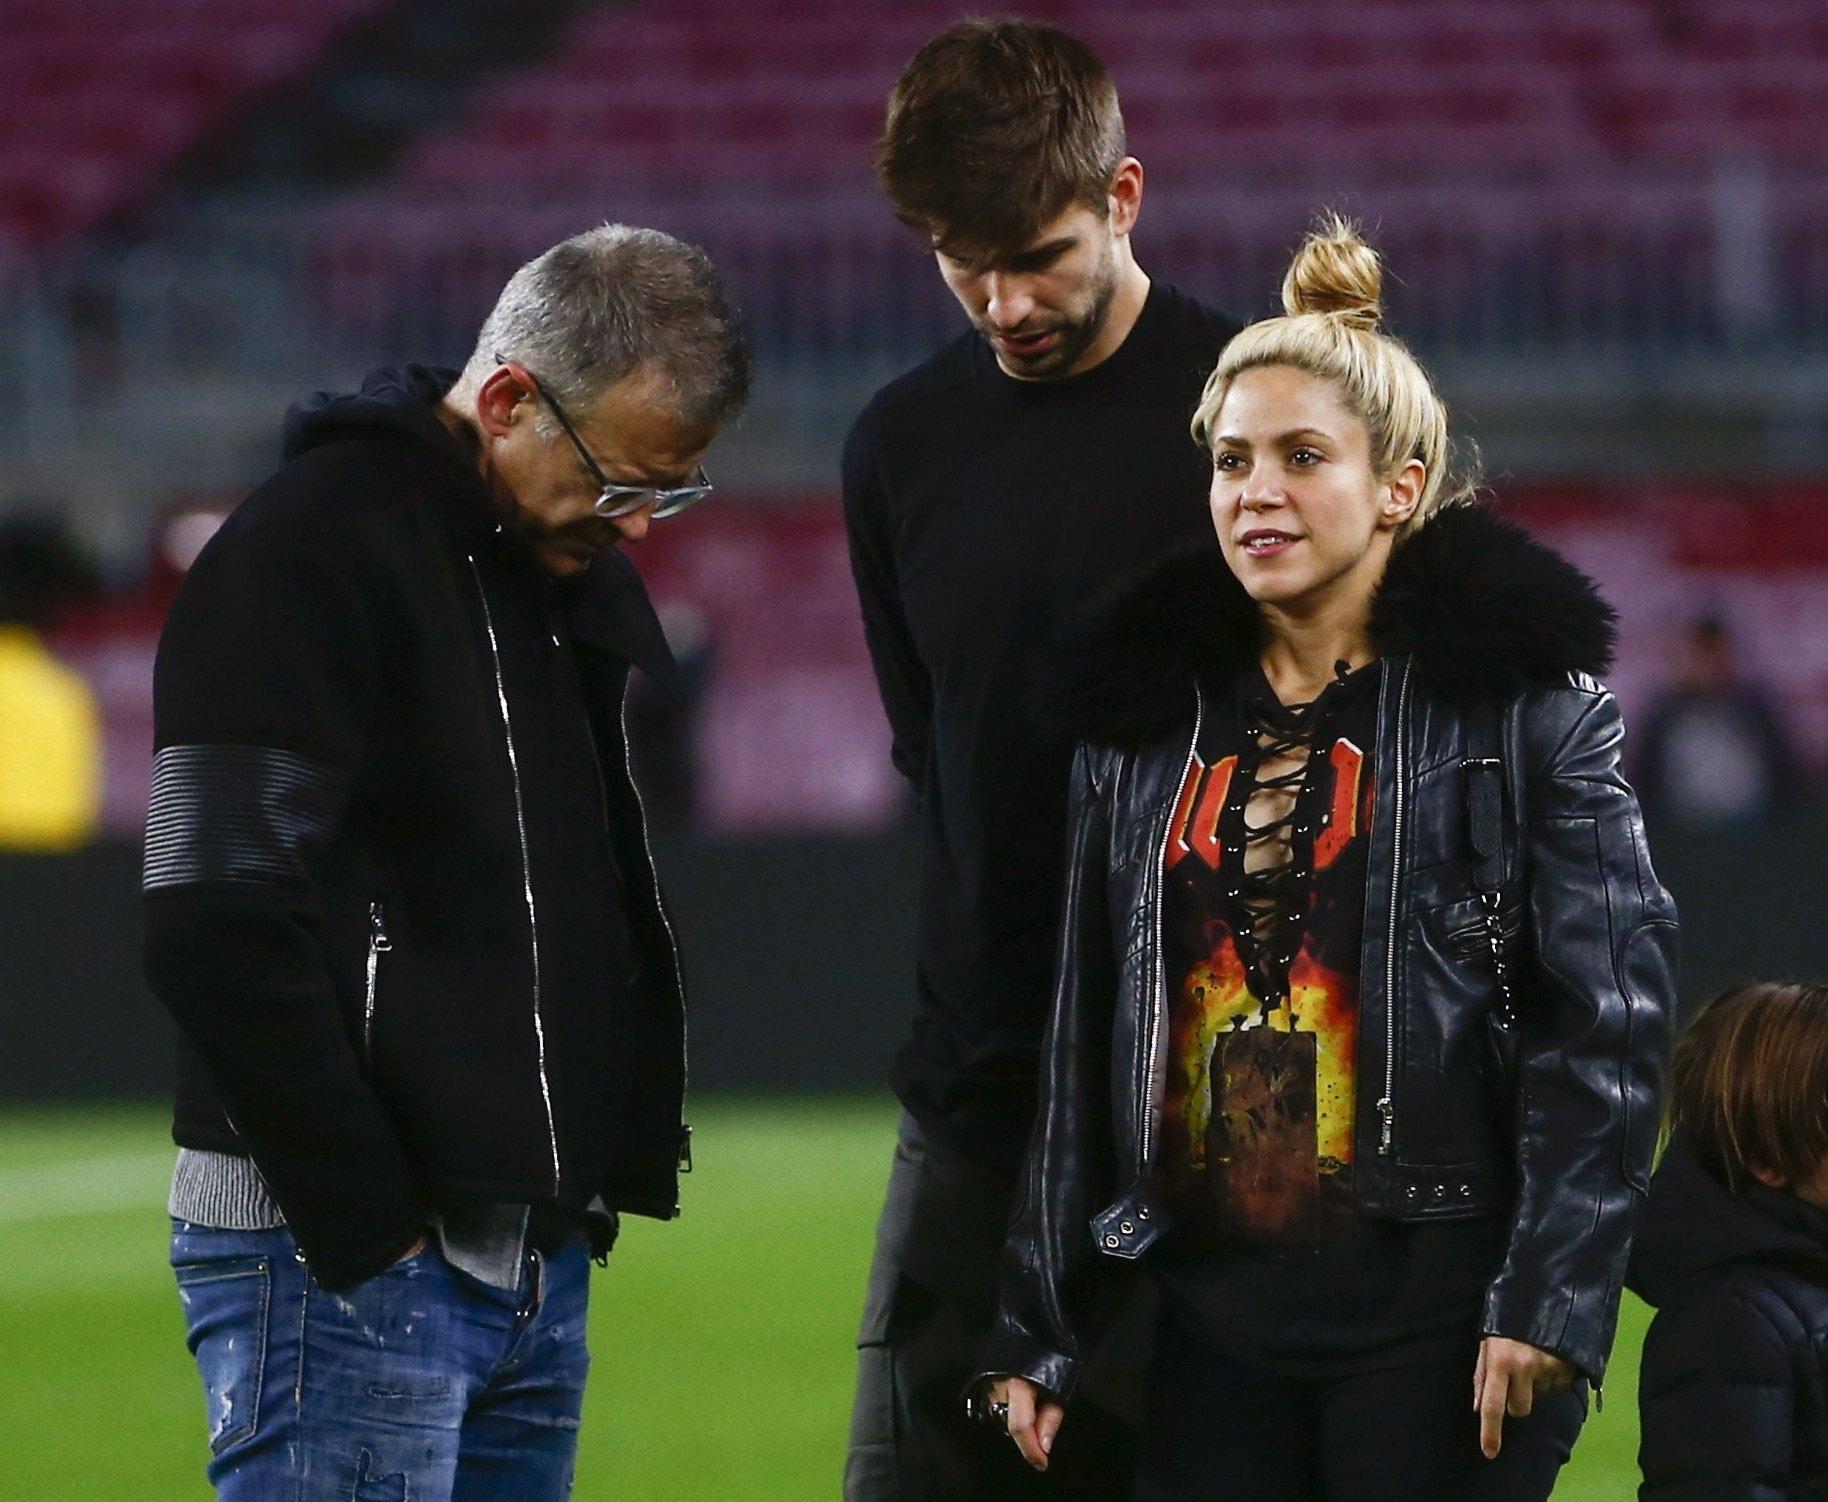 Piqué e Shakira sono in crisi? Il calciatore smentisce con uno scatto familiare